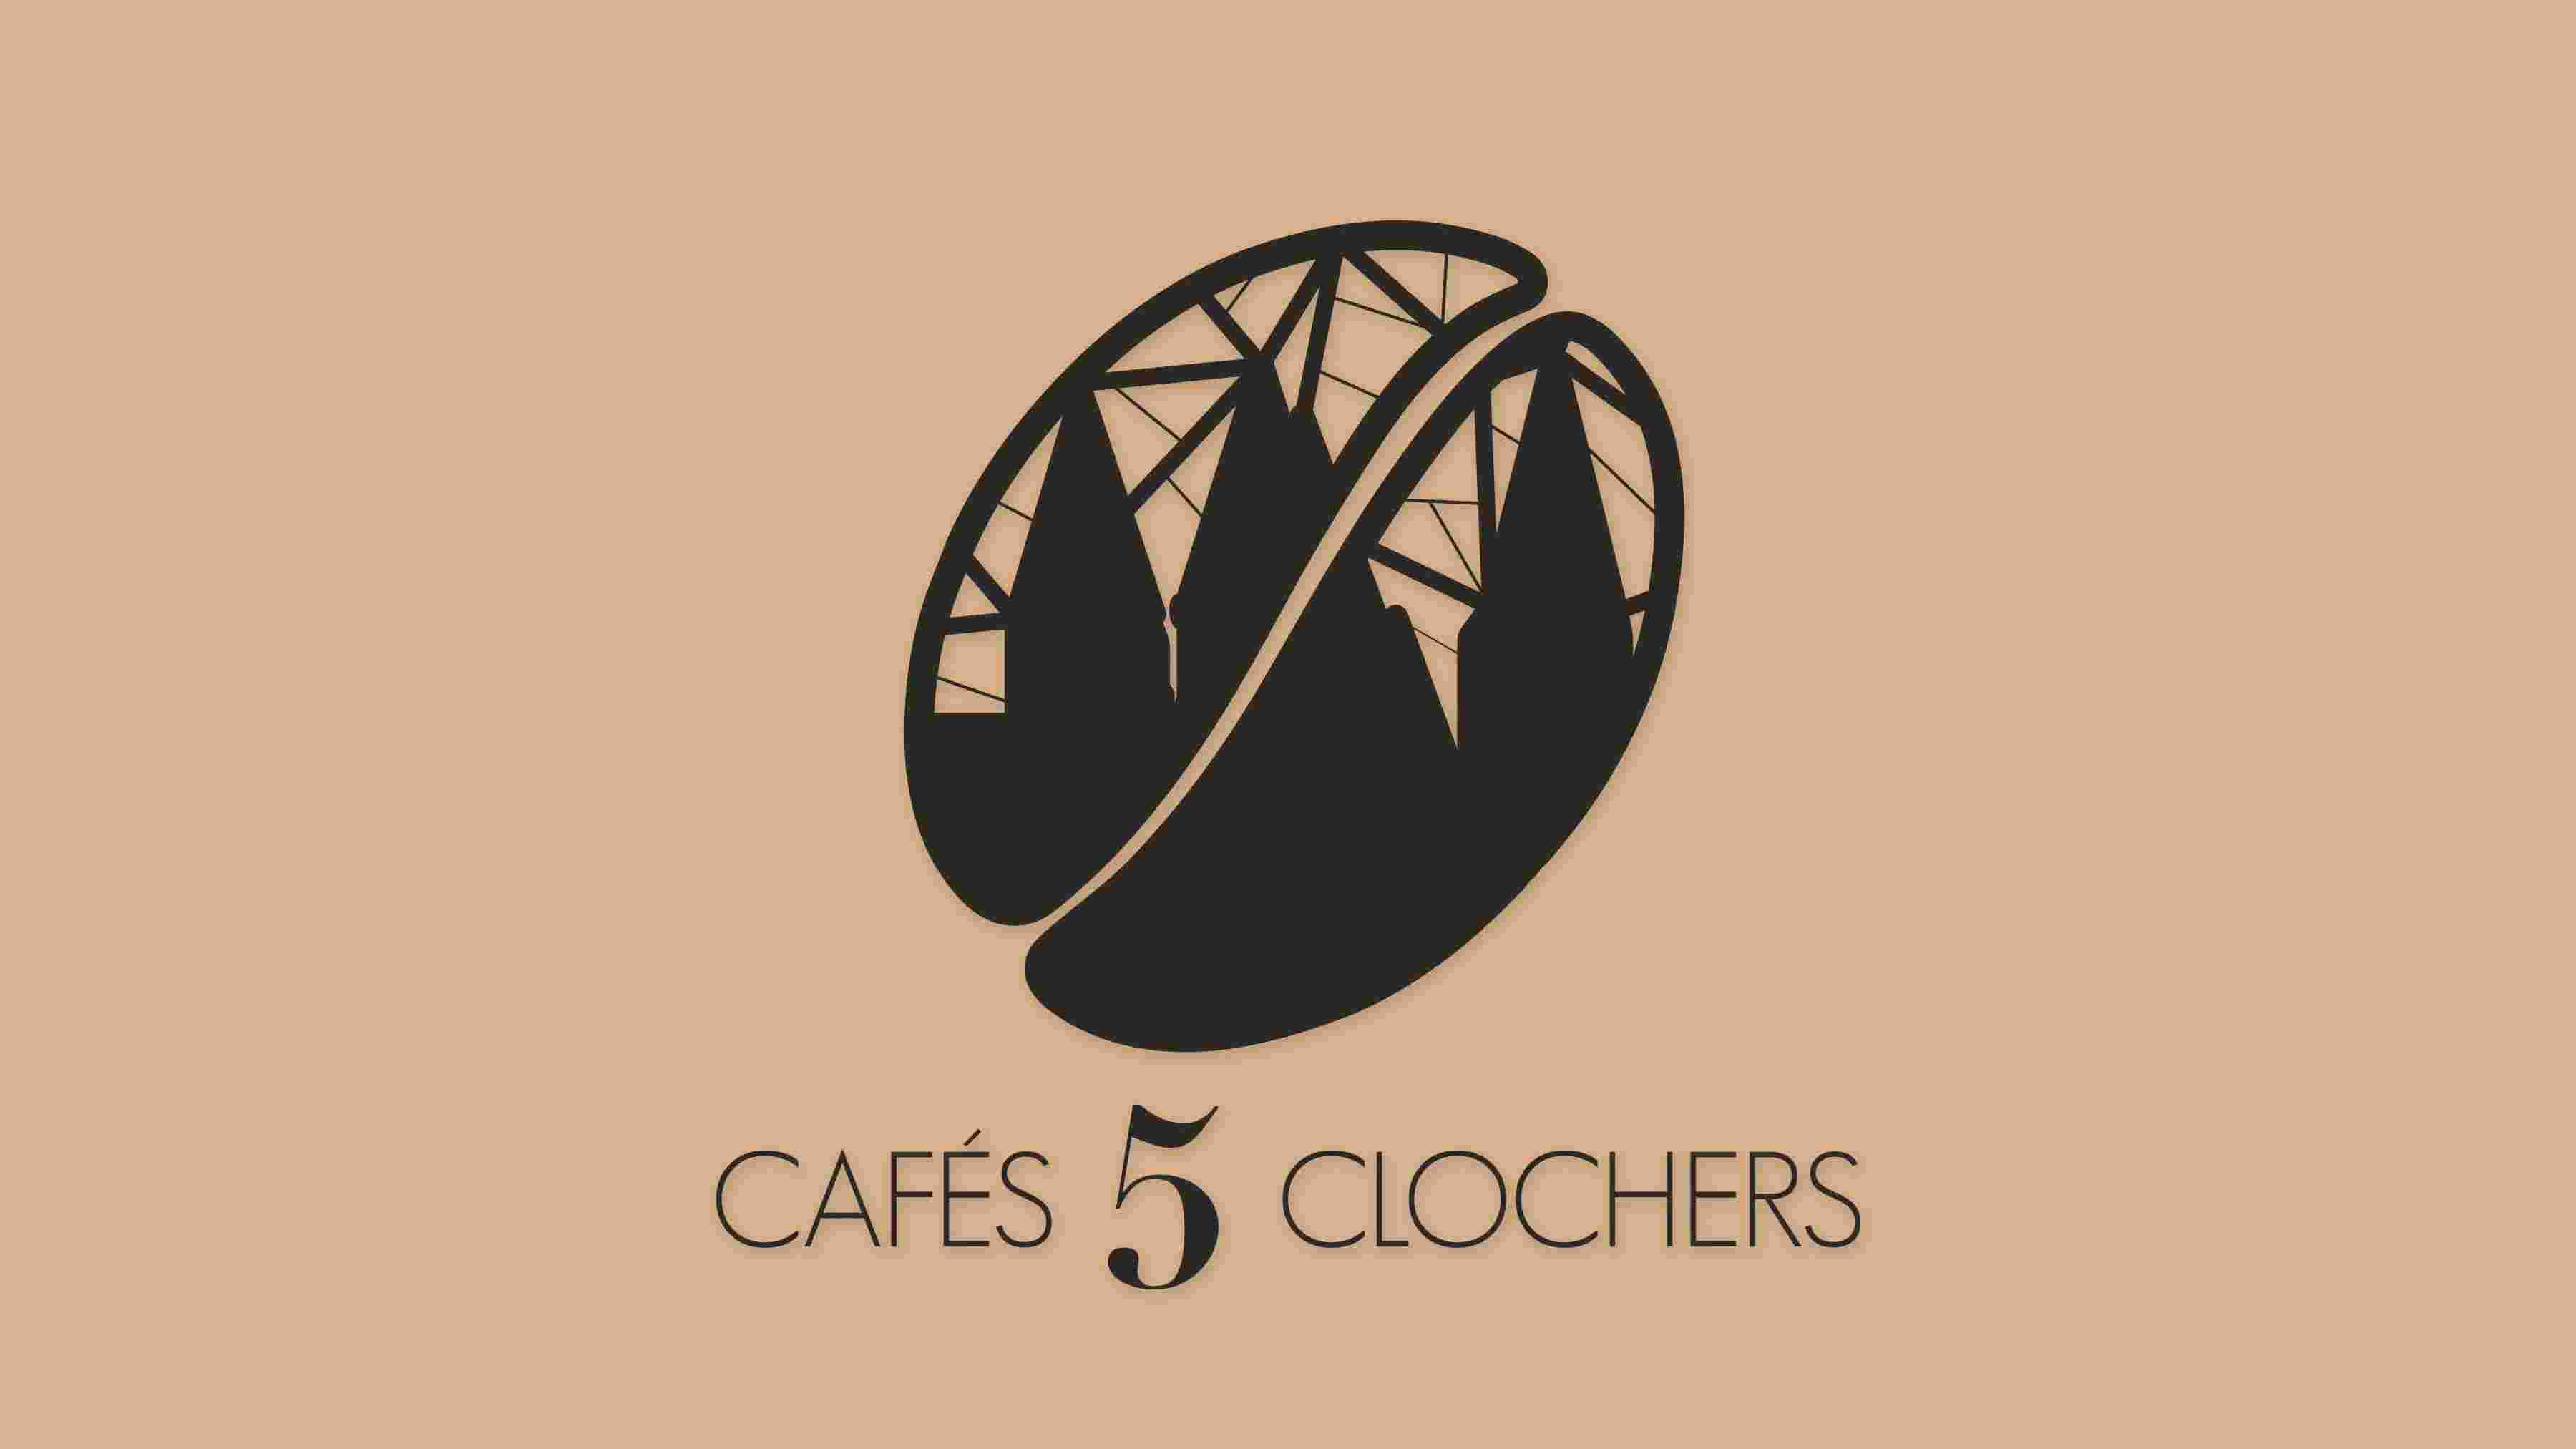 Cafés 5 Clochers